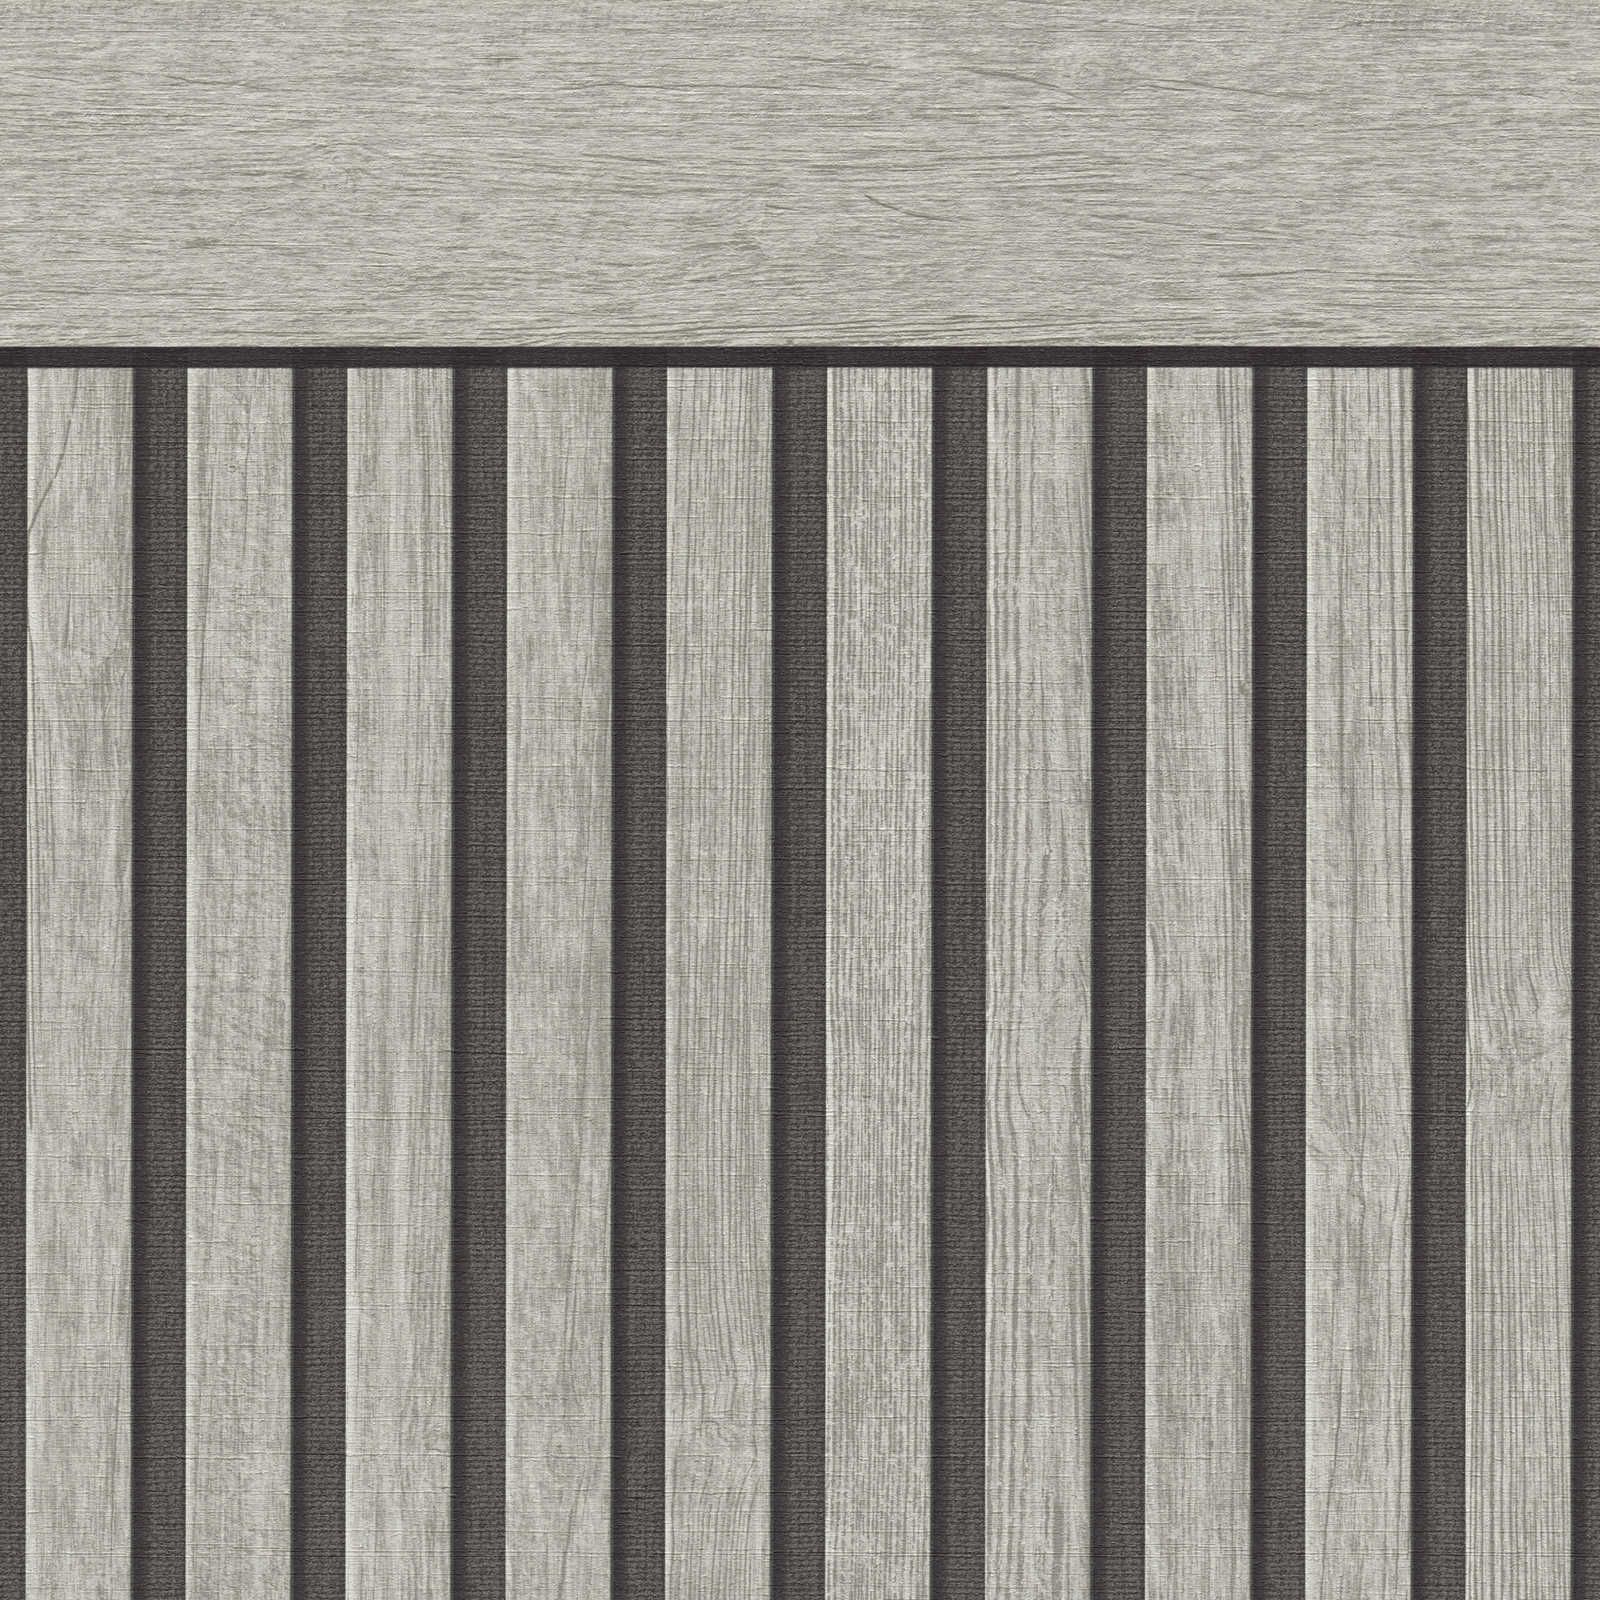         Wandvlies met realistisch akoestisch paneelpatroon van hout - grijs
    